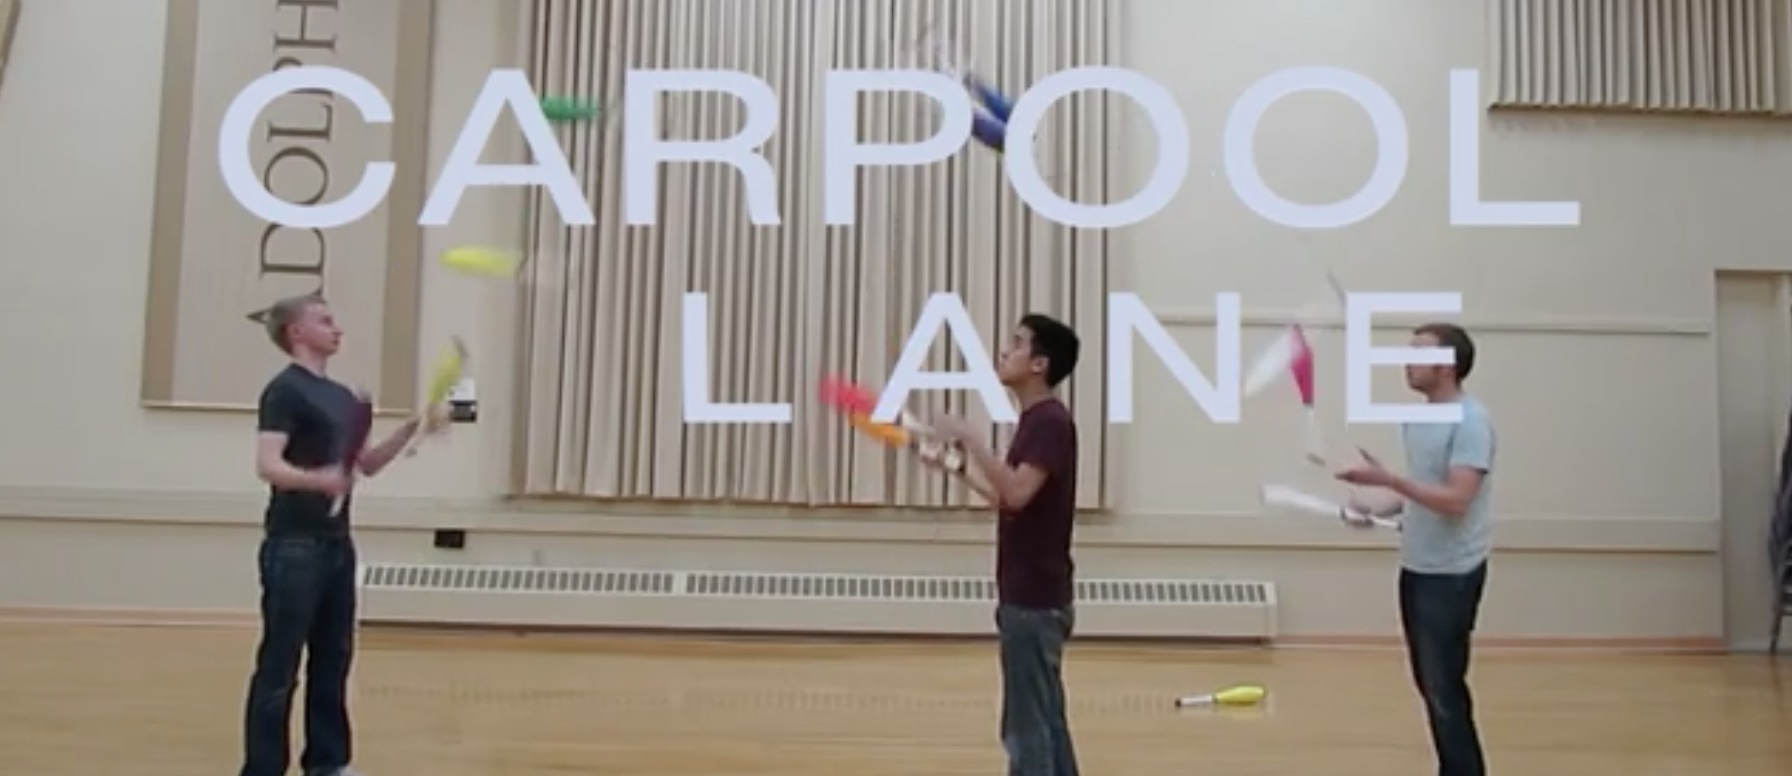 Video Carpool Lane jongleurs avec des quilles